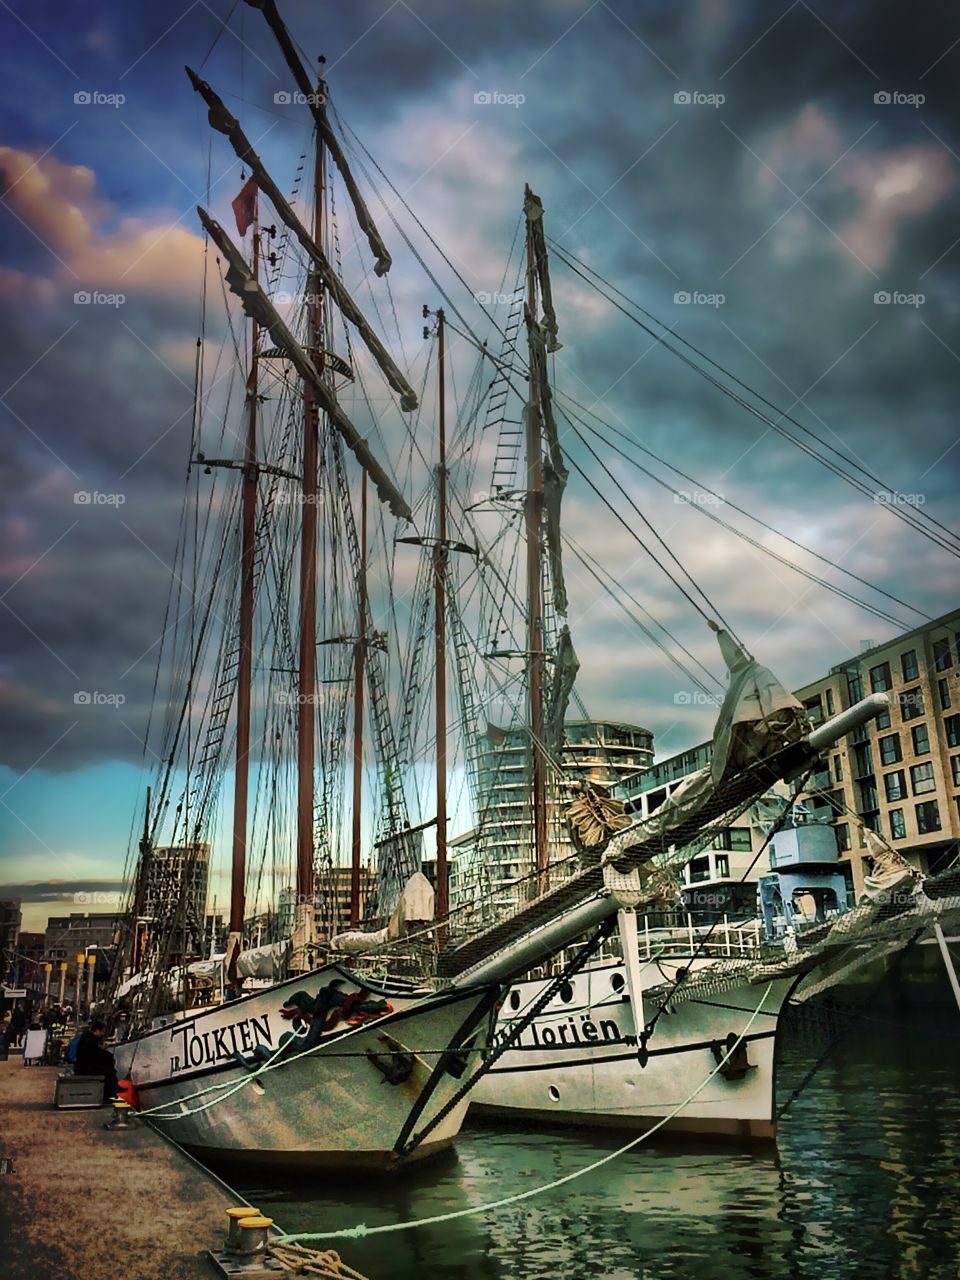 Hafen City Port, Hamburg, Germany 